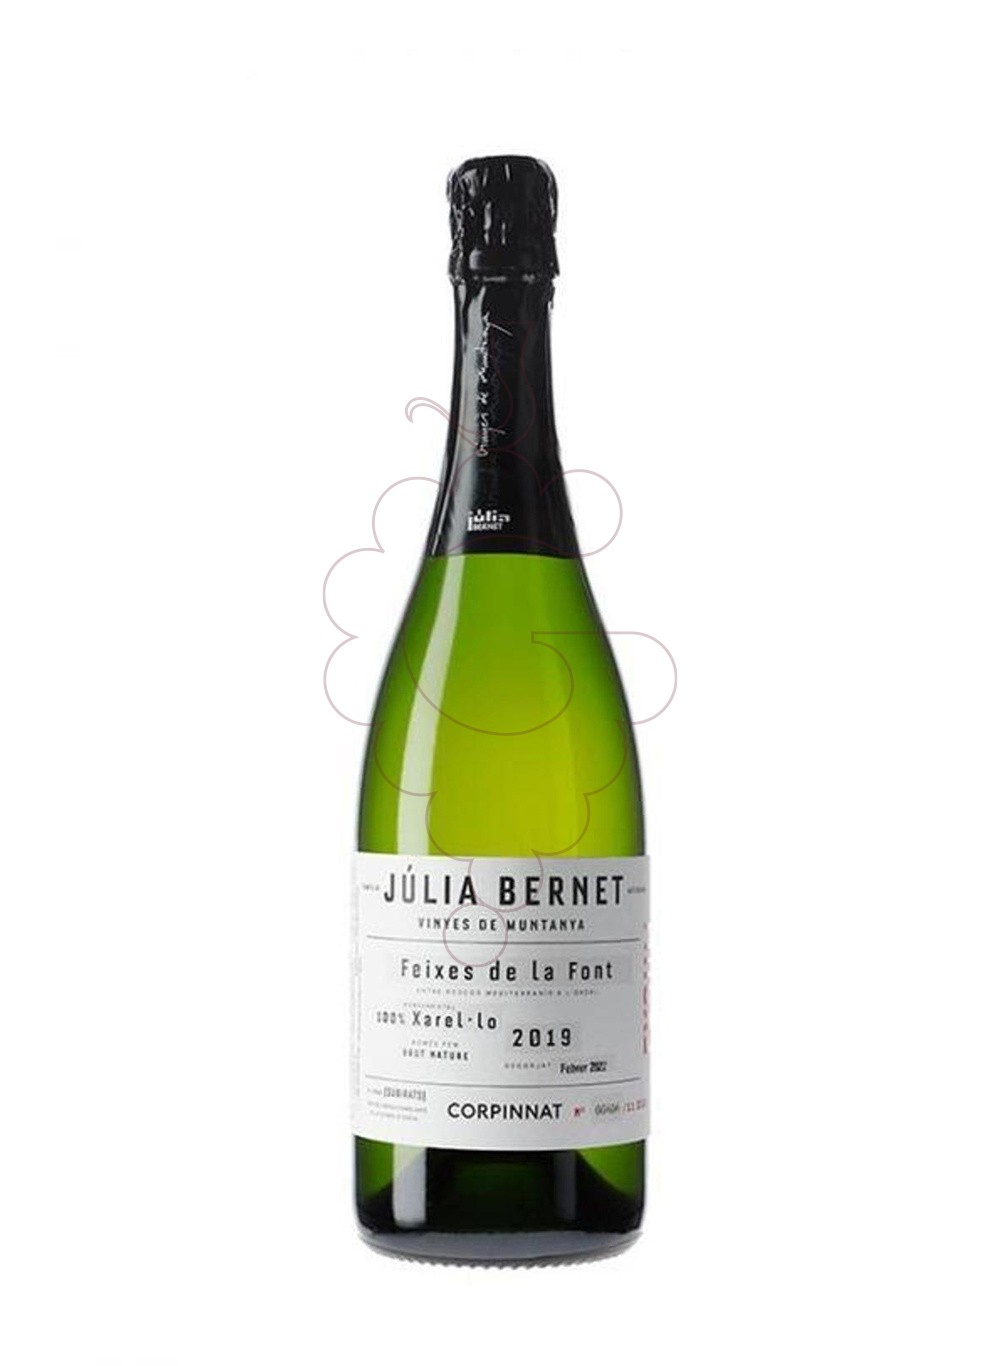 Photo Julia bernet vinyes de muntany sparkling wine